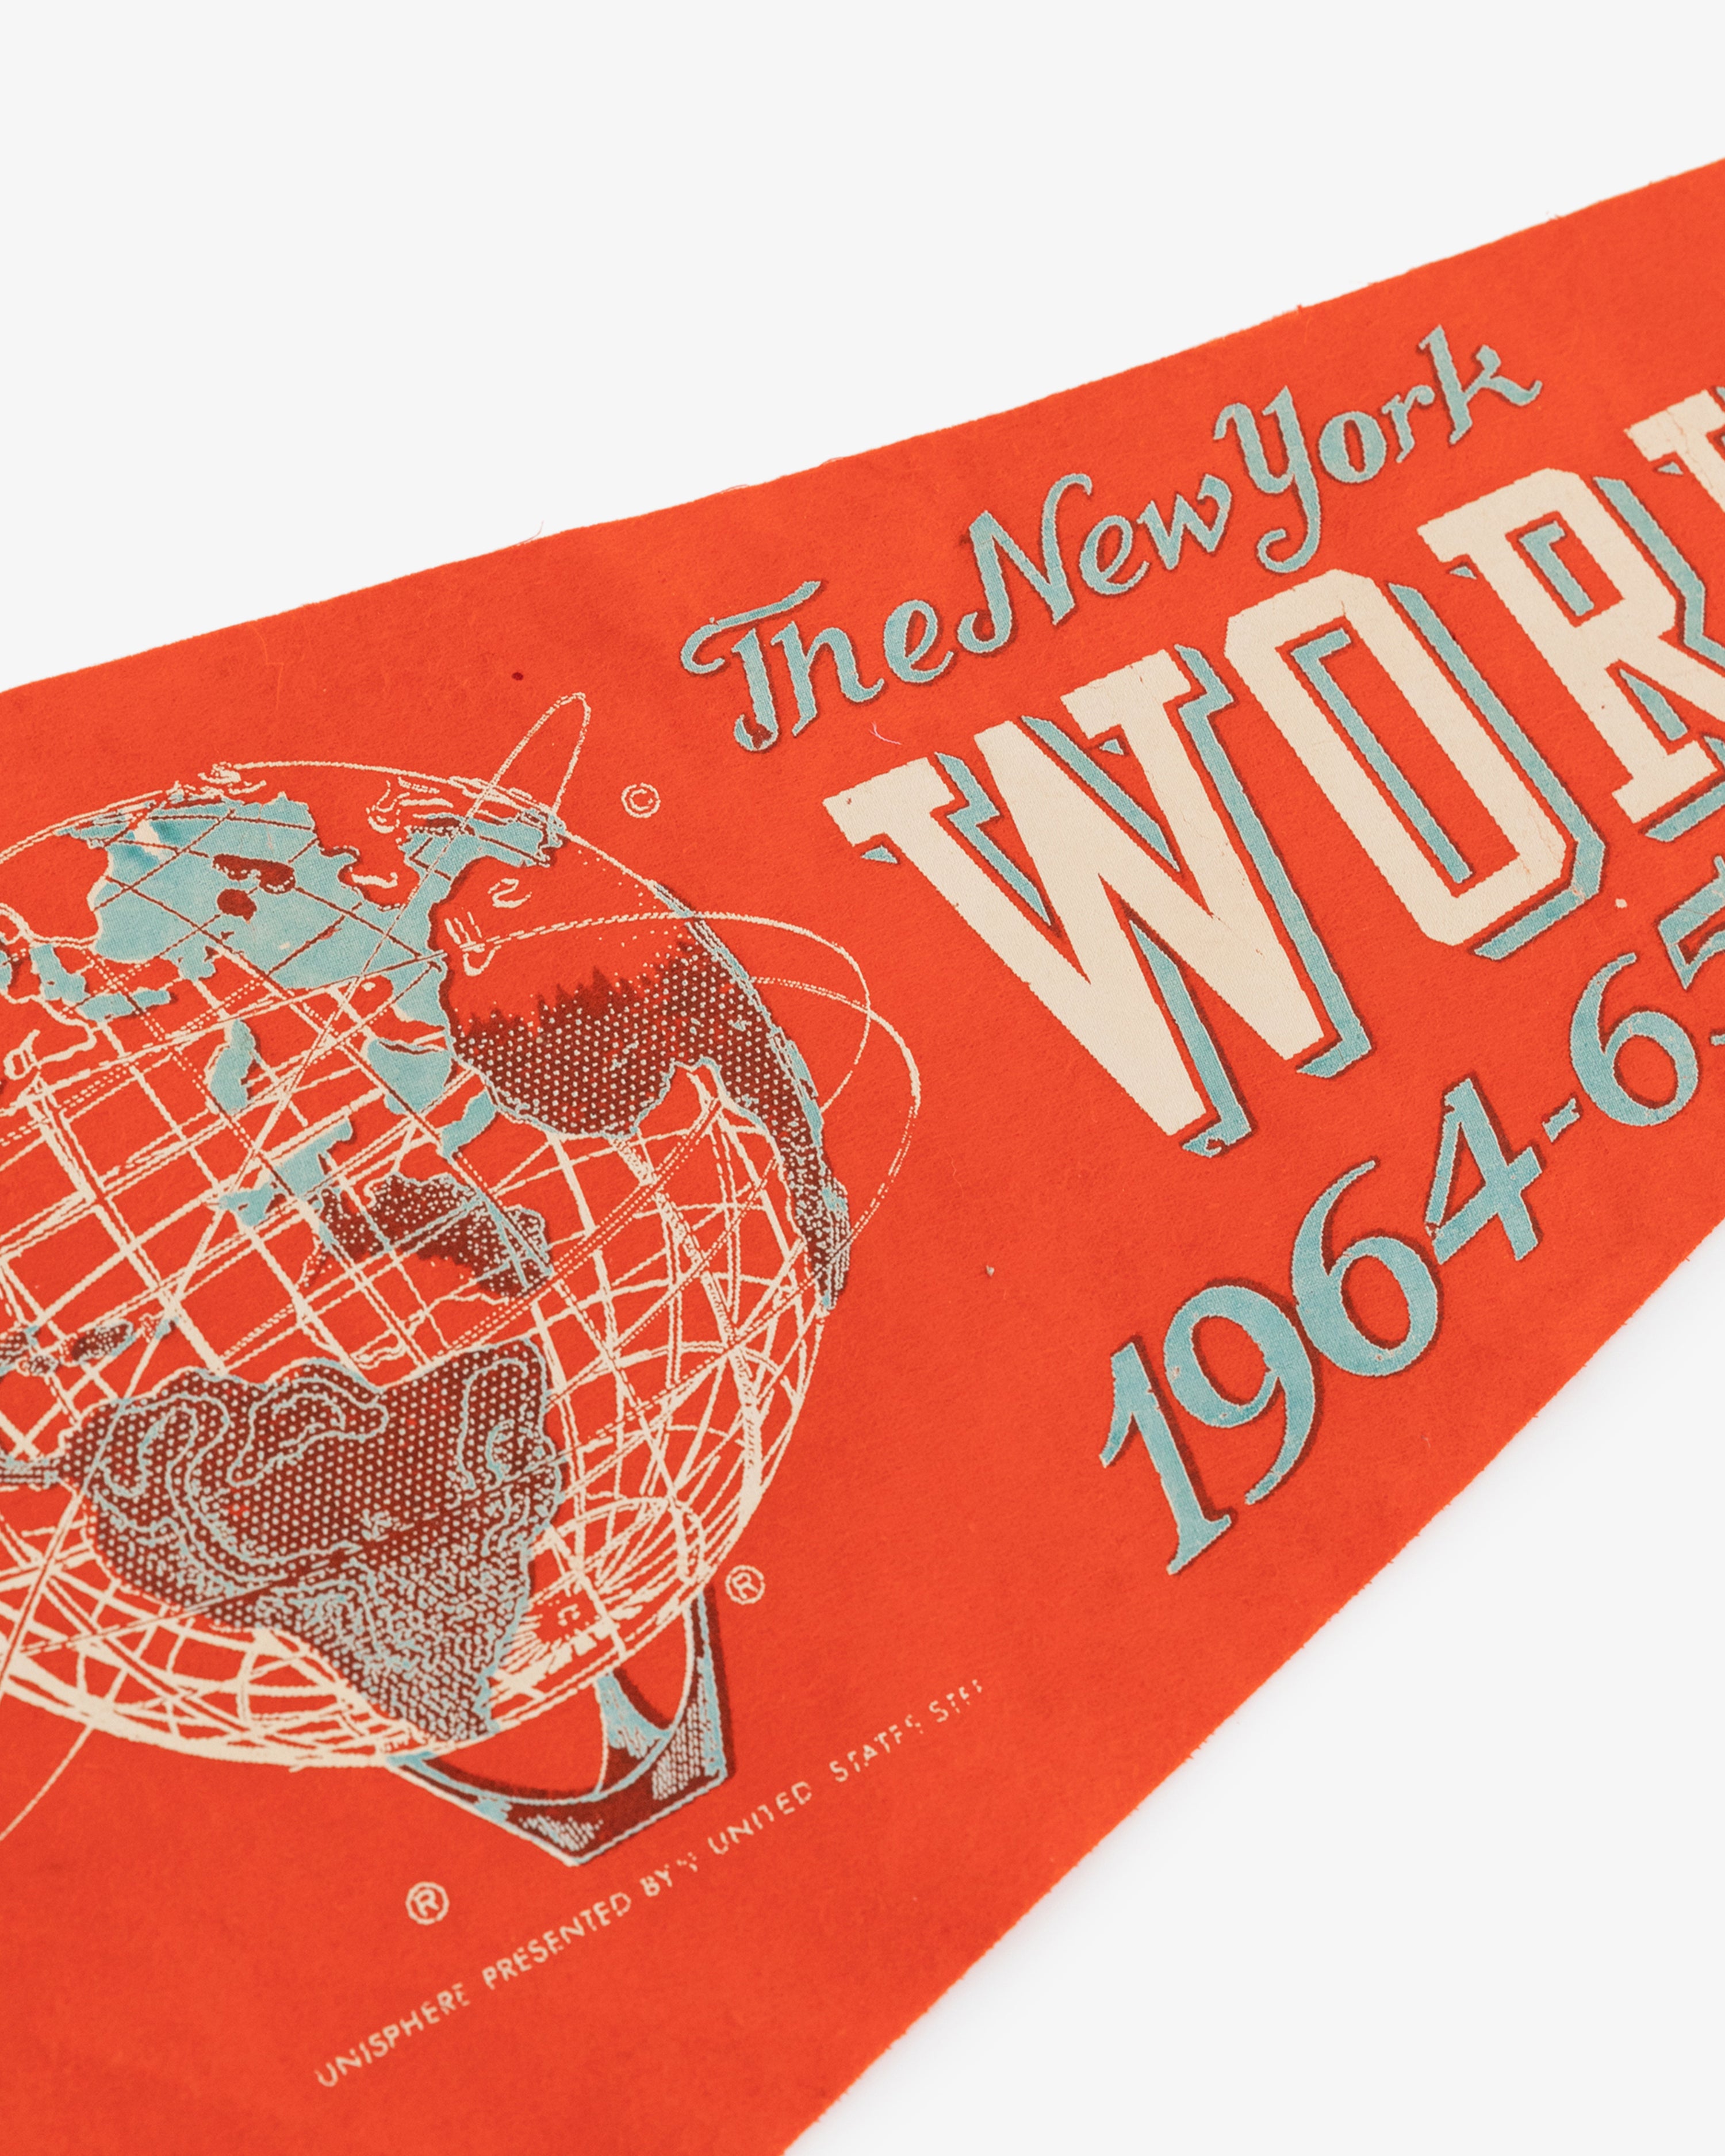 Vintage 1964-65 World's Fair Pennant